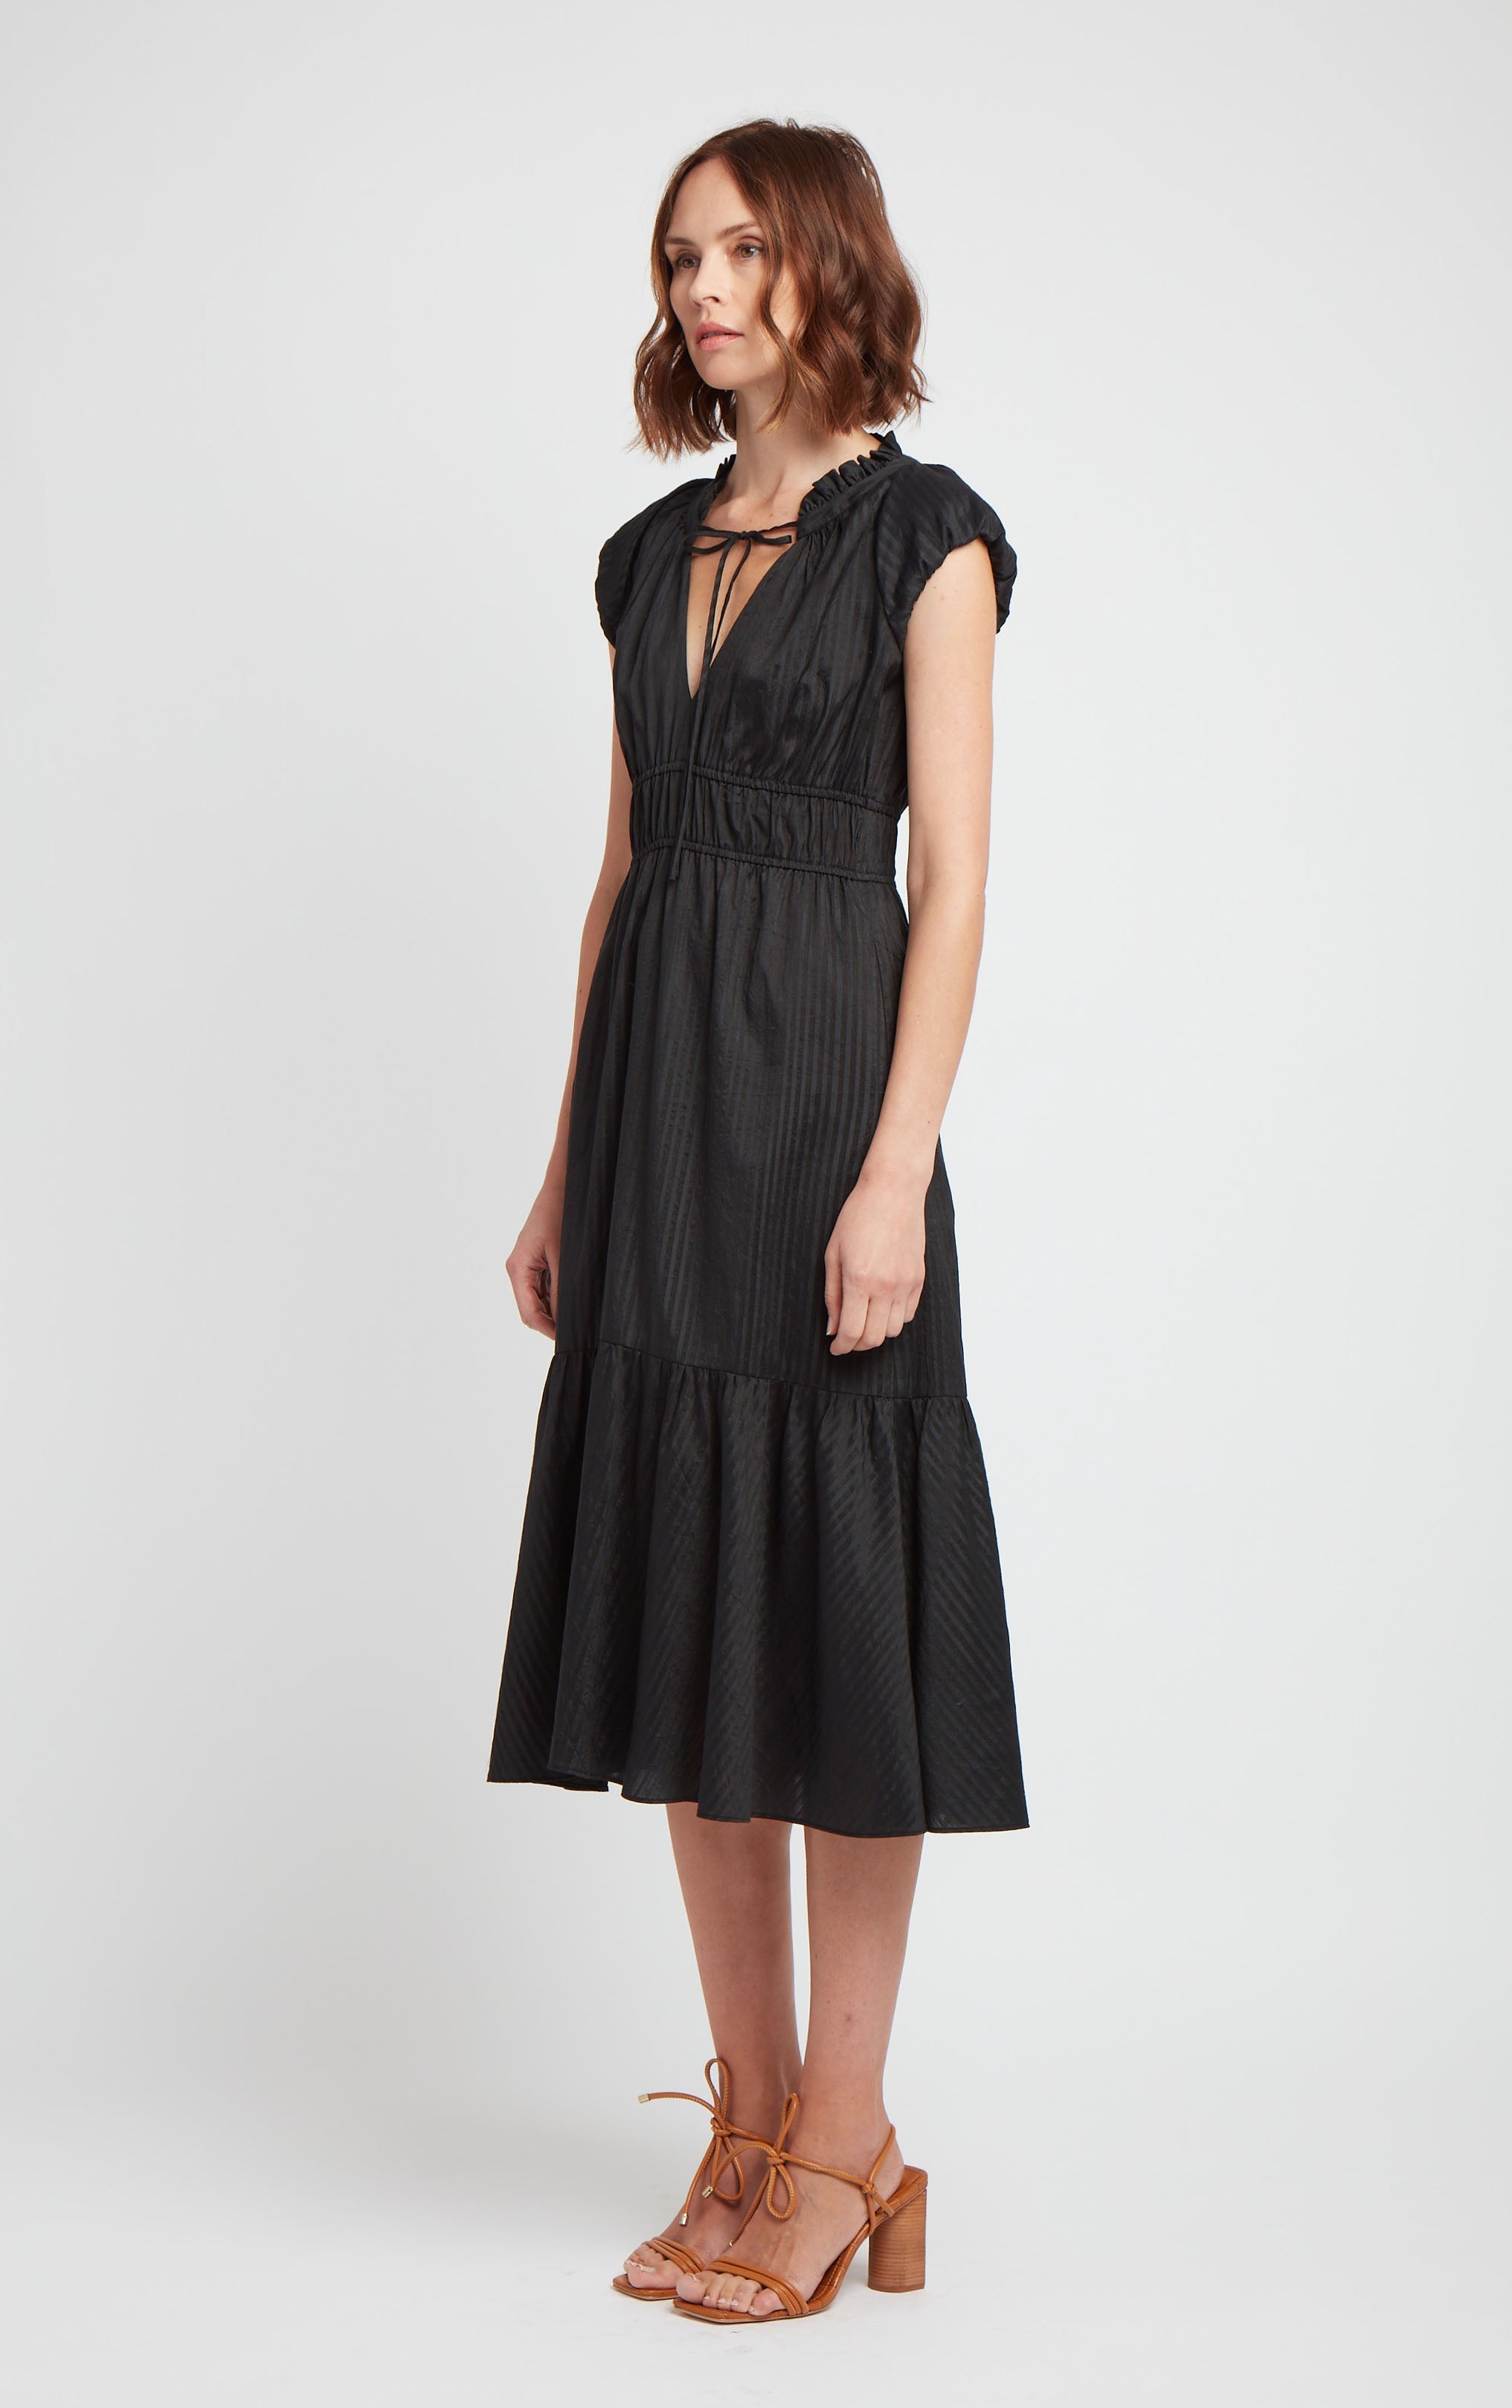 odette-dress-black-cotton-silk-blend-front-2